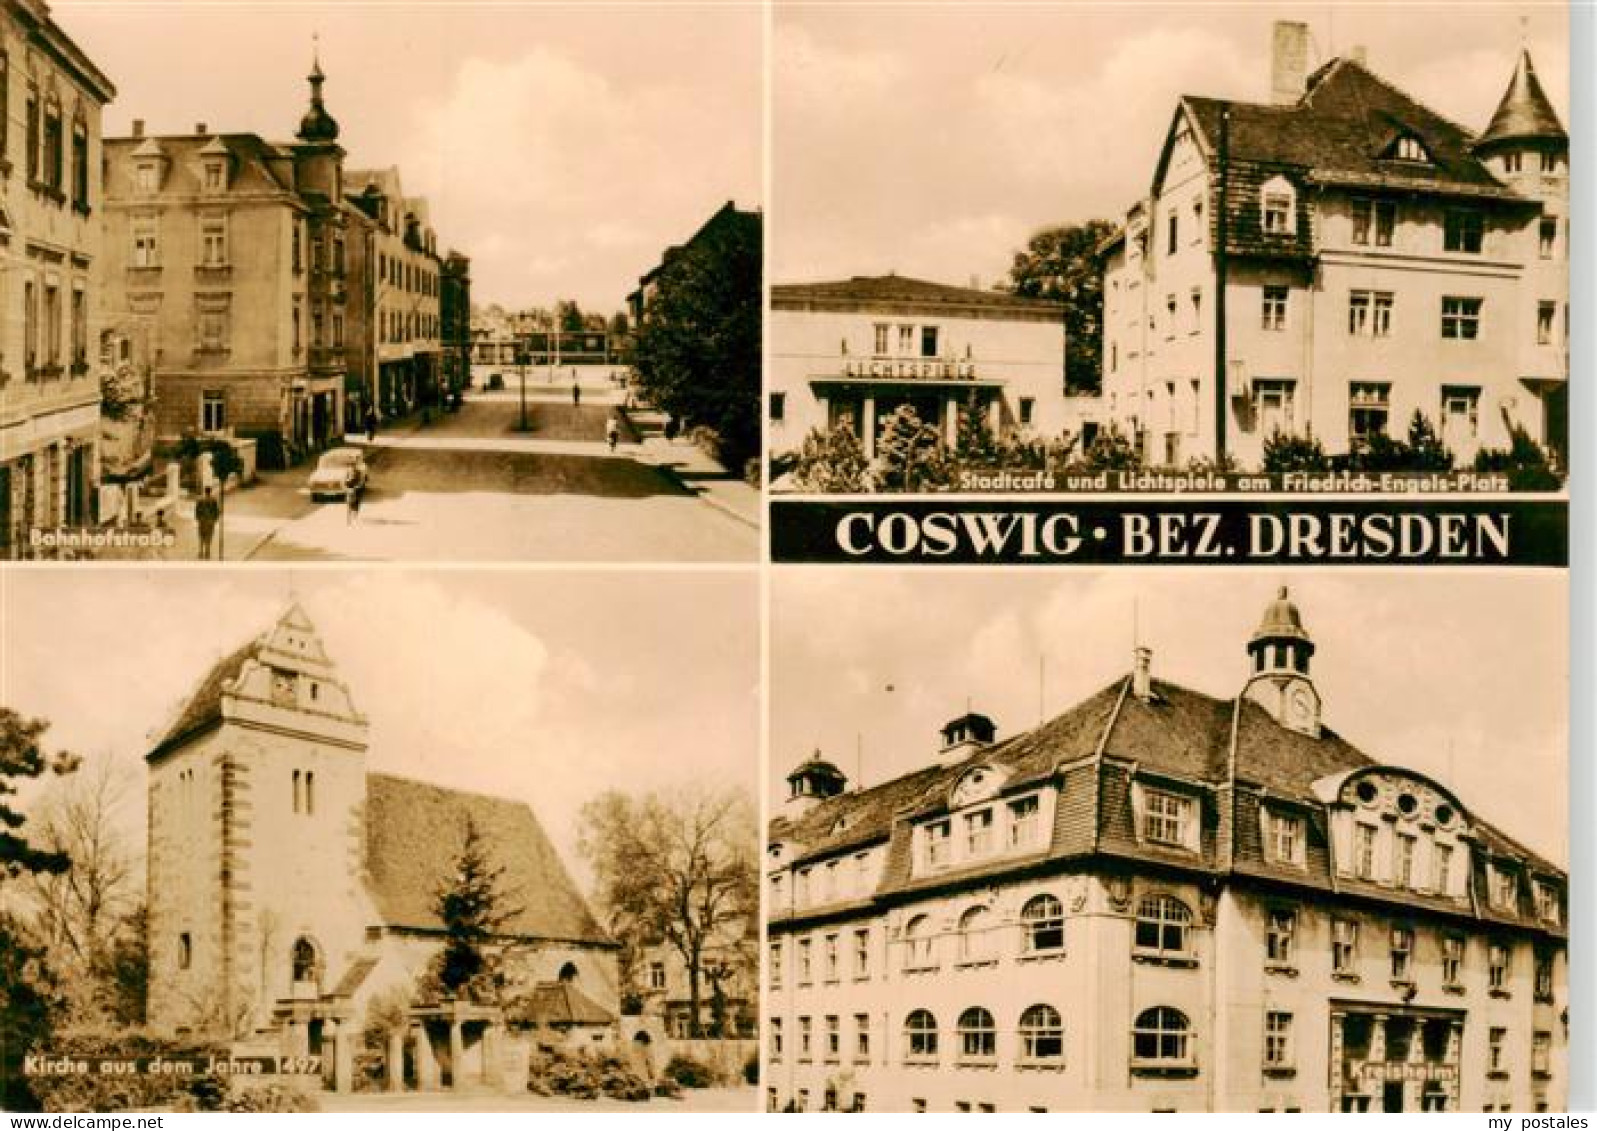 73910516 Coswig Sachsen Bahnhofstrasse Stadtcafe Und Lichtspiele Am Friedrich En - Coswig